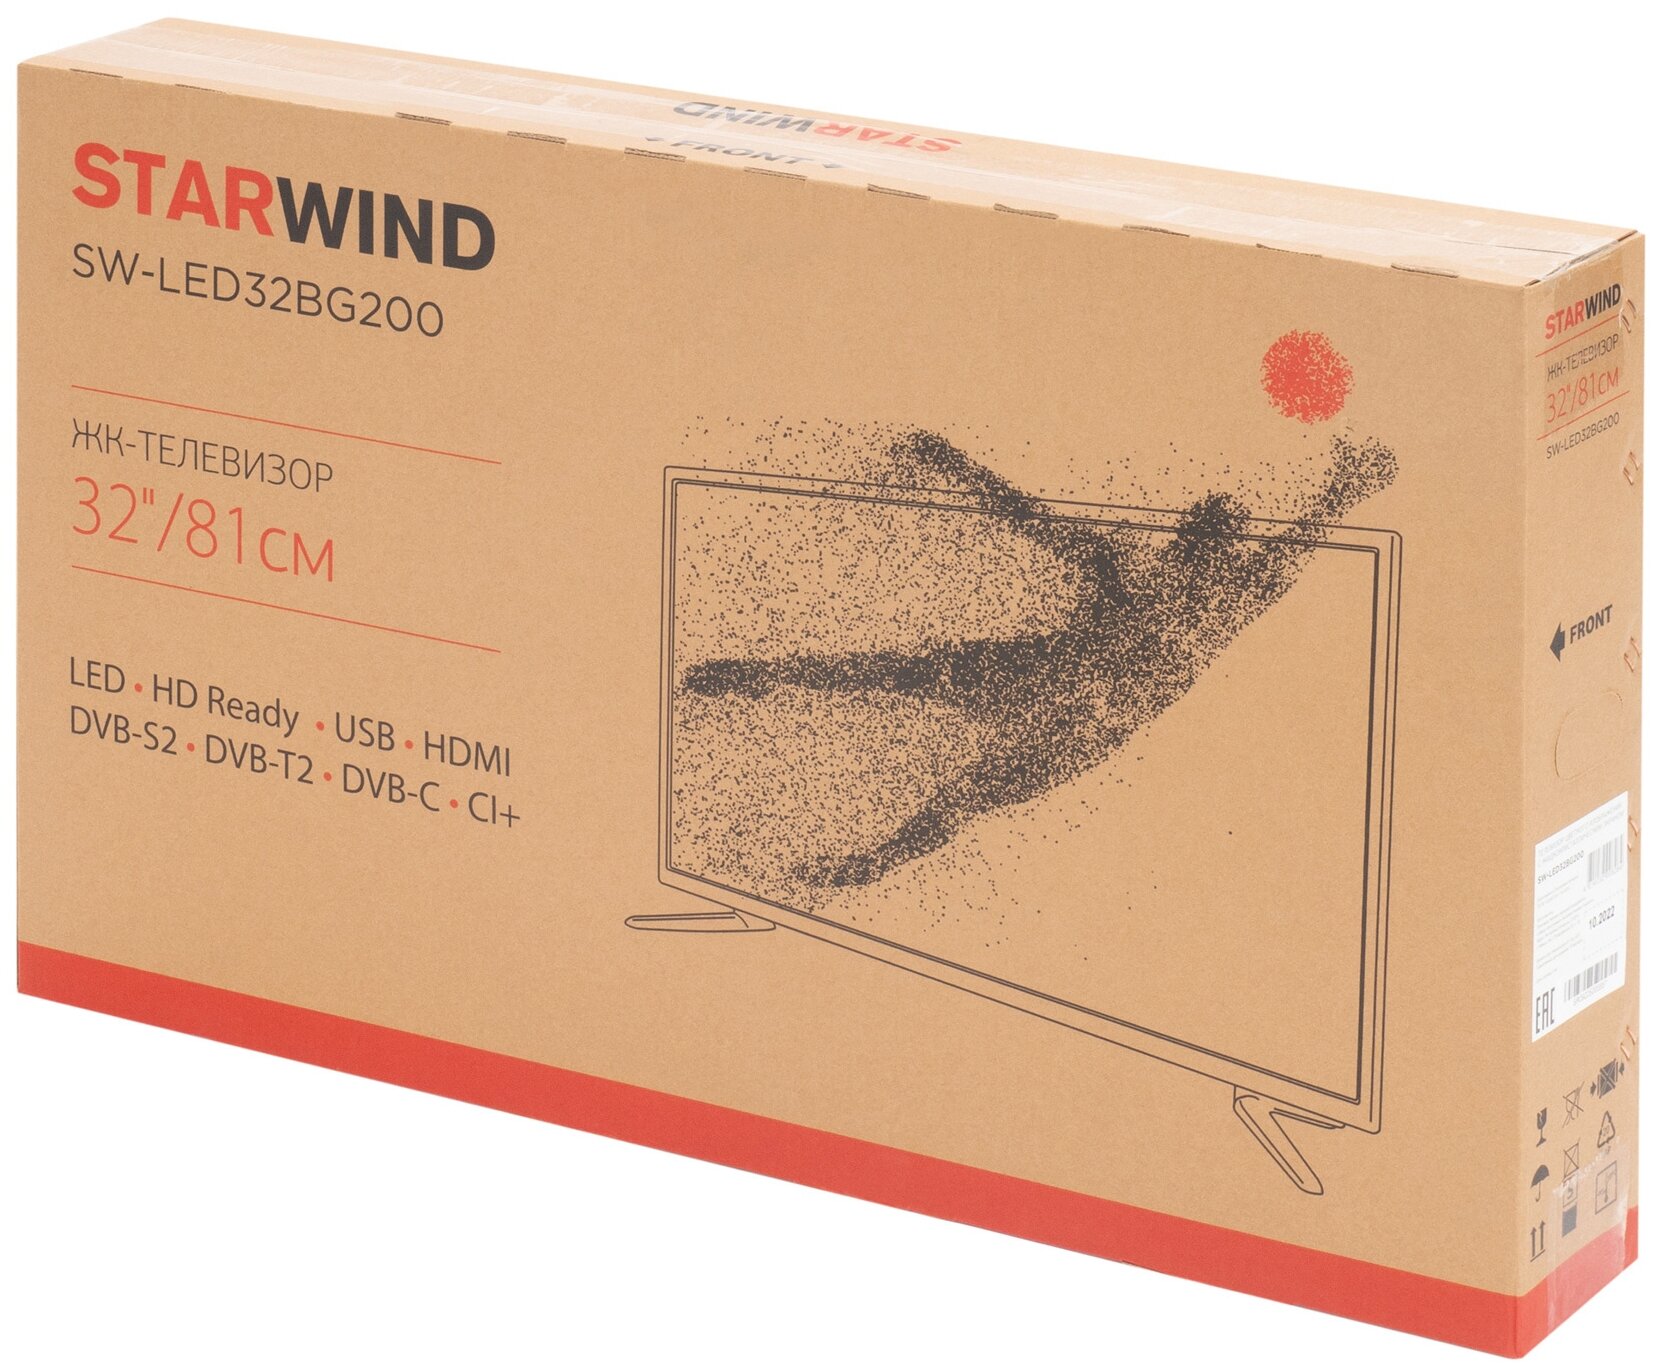 32" Телевизор STARWIND SW-LED32BG200 2022 LED OLED